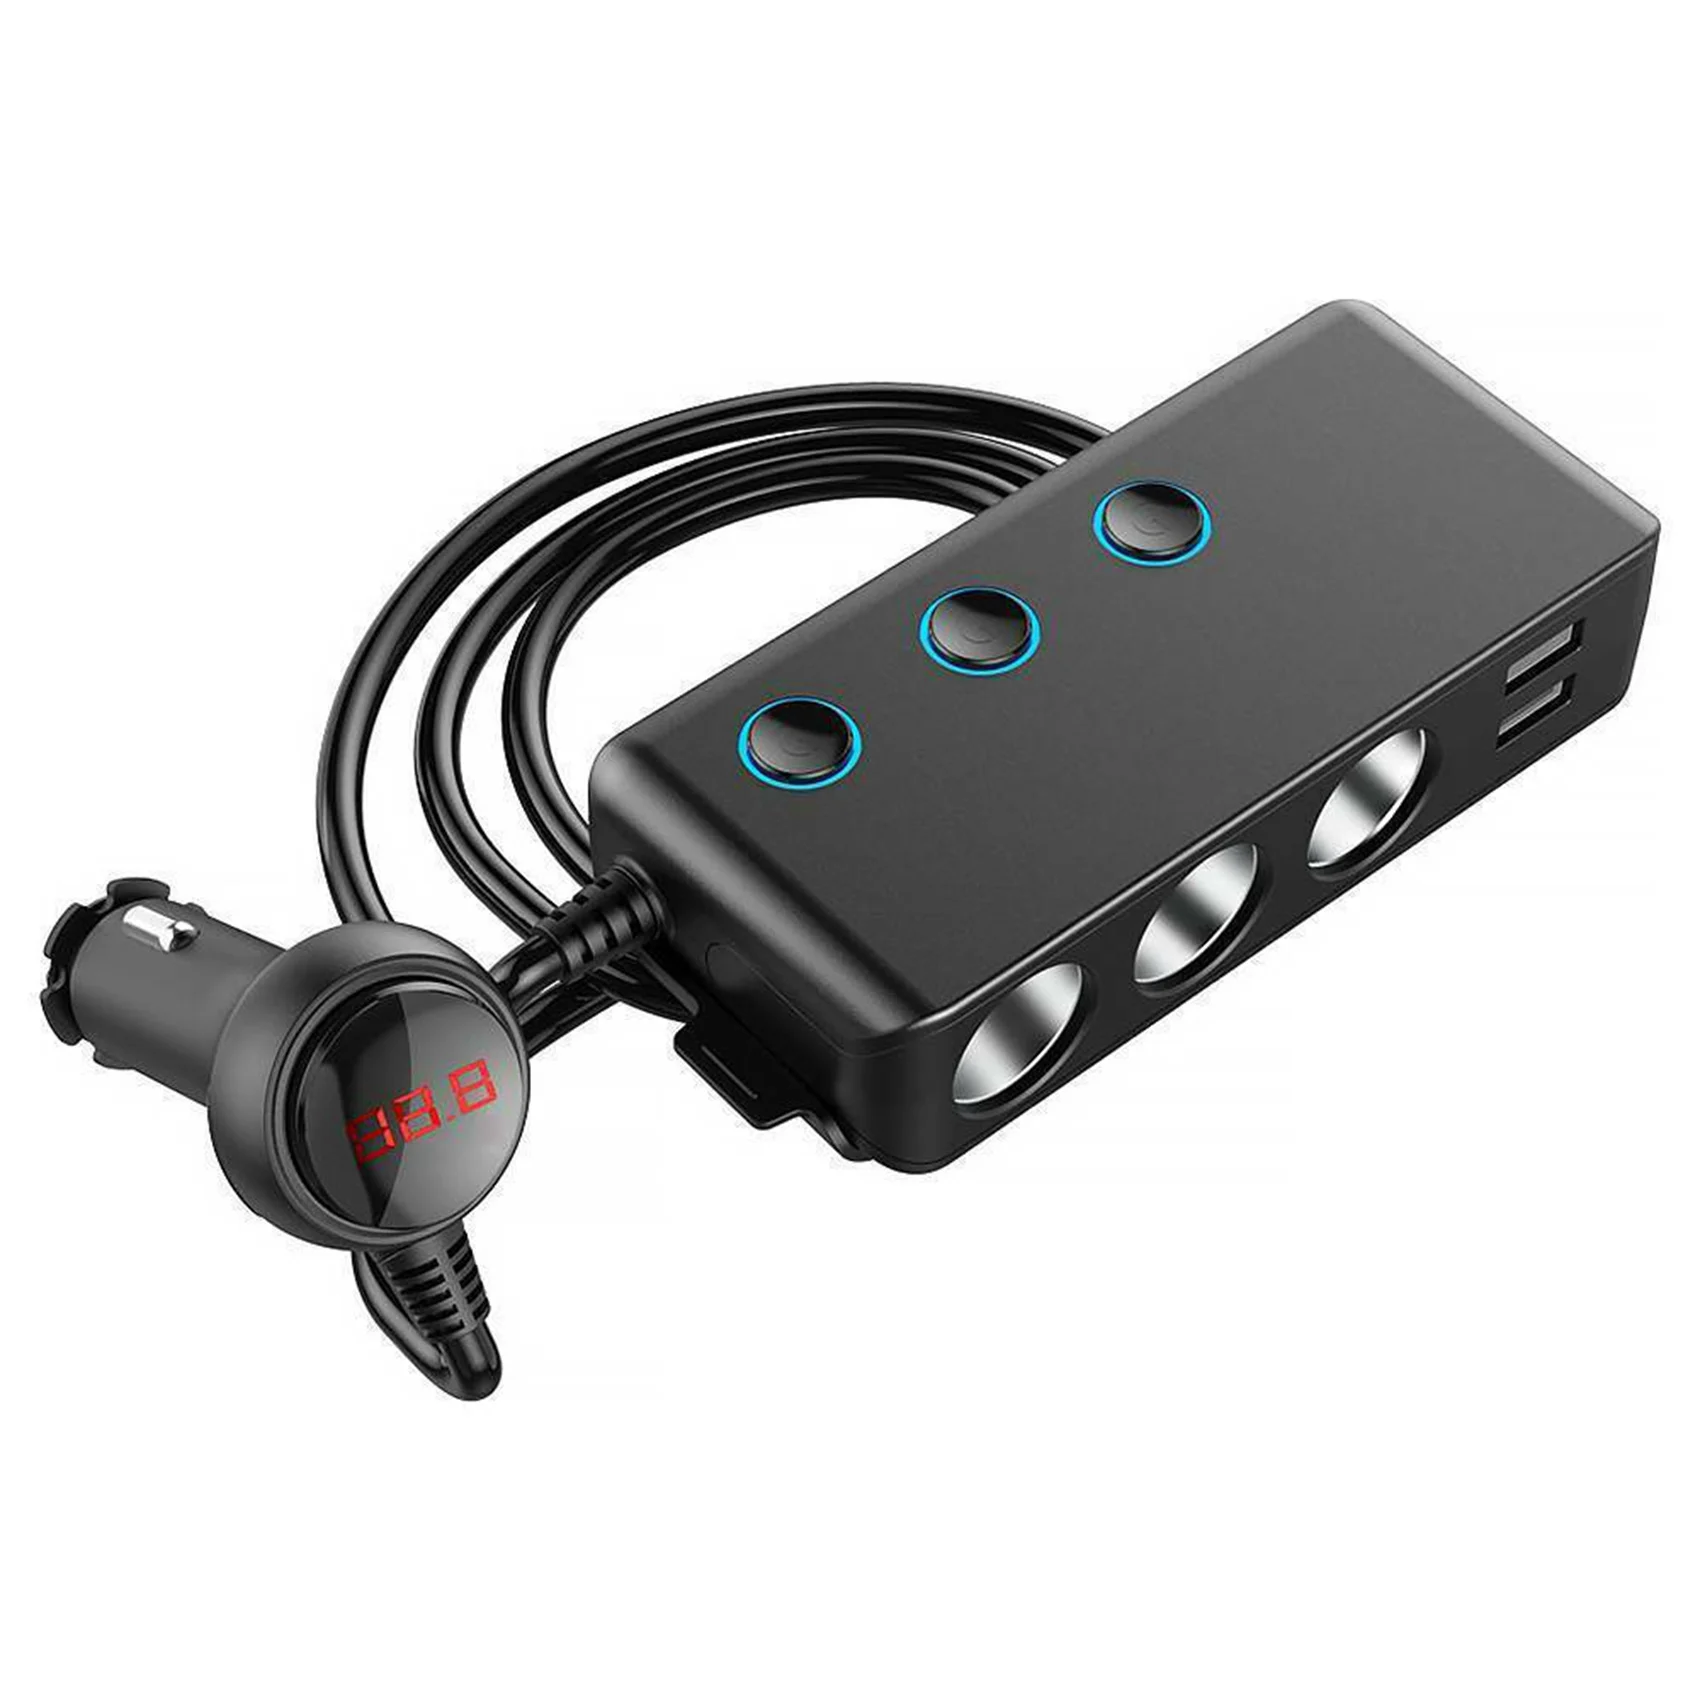 

Автомобильный прикуриватель, один на четыре порта USB для быстрой зарядки, 3 порта, 1QC3.0 Задний зажим, светодиодный дисплей